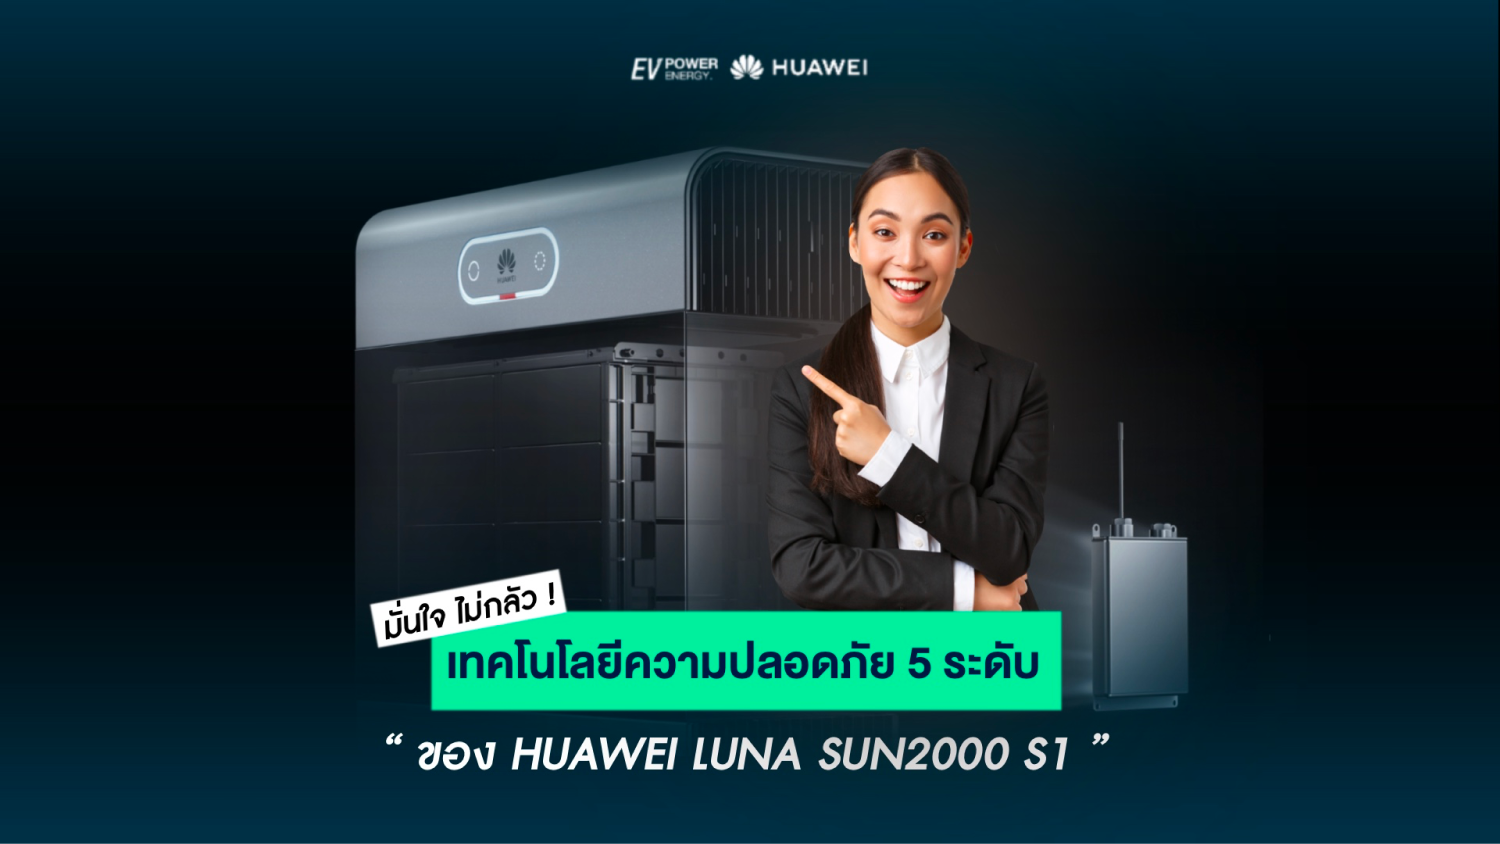 เทคโนโลยีความปลอดภัย 5 ระดับ ของ Huawei LUNA2000 S1